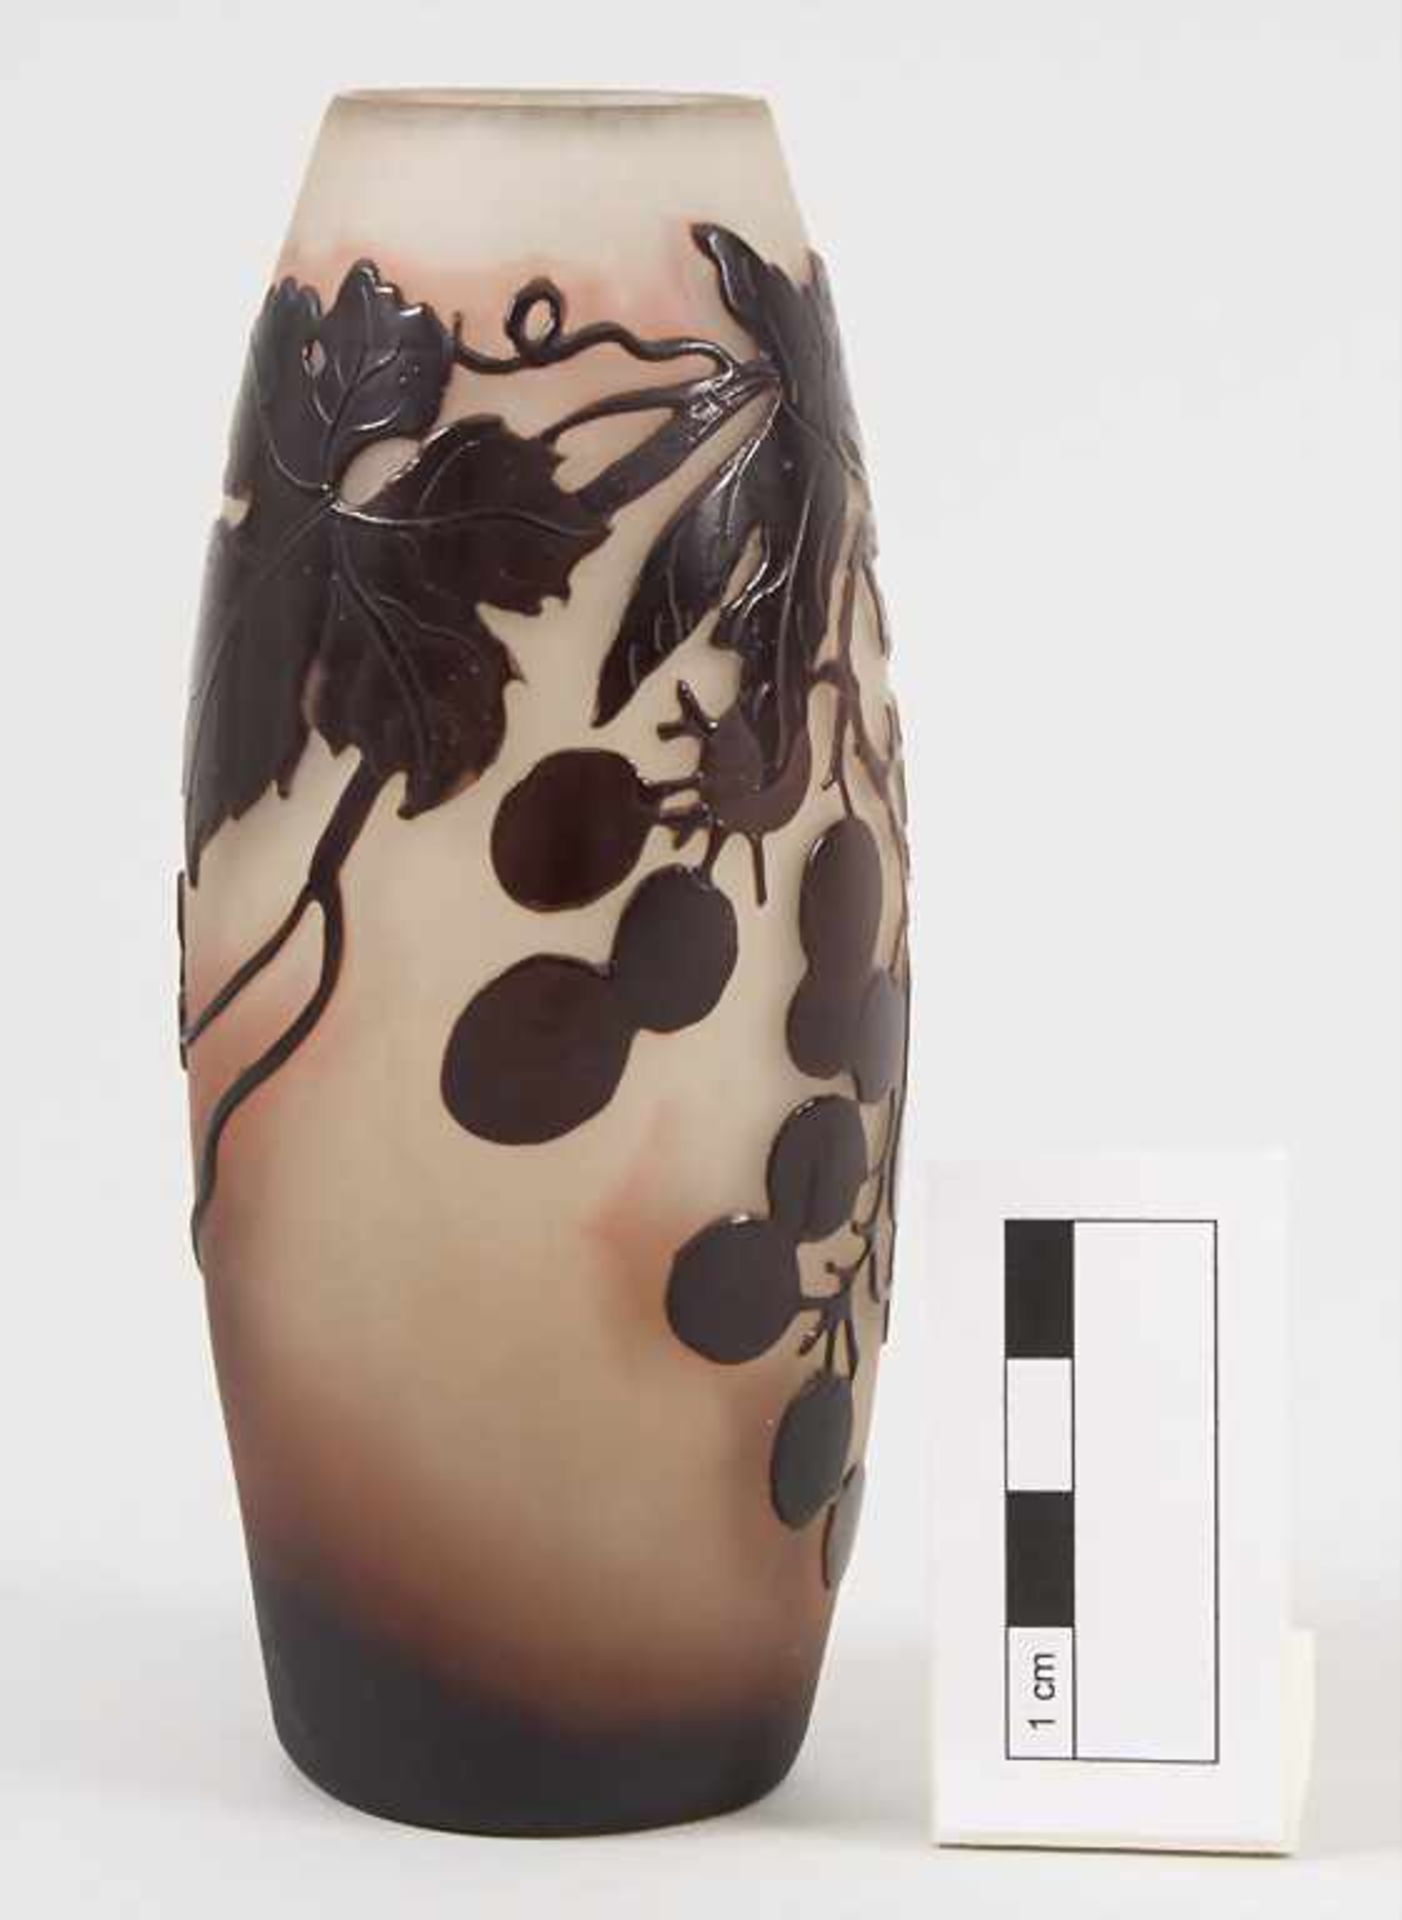 Jugendstil Vase mit Wein / An Art Nouveau cameo glass vase with wine, Emile Gallé, Ecole de Nancy, - Bild 2 aus 9